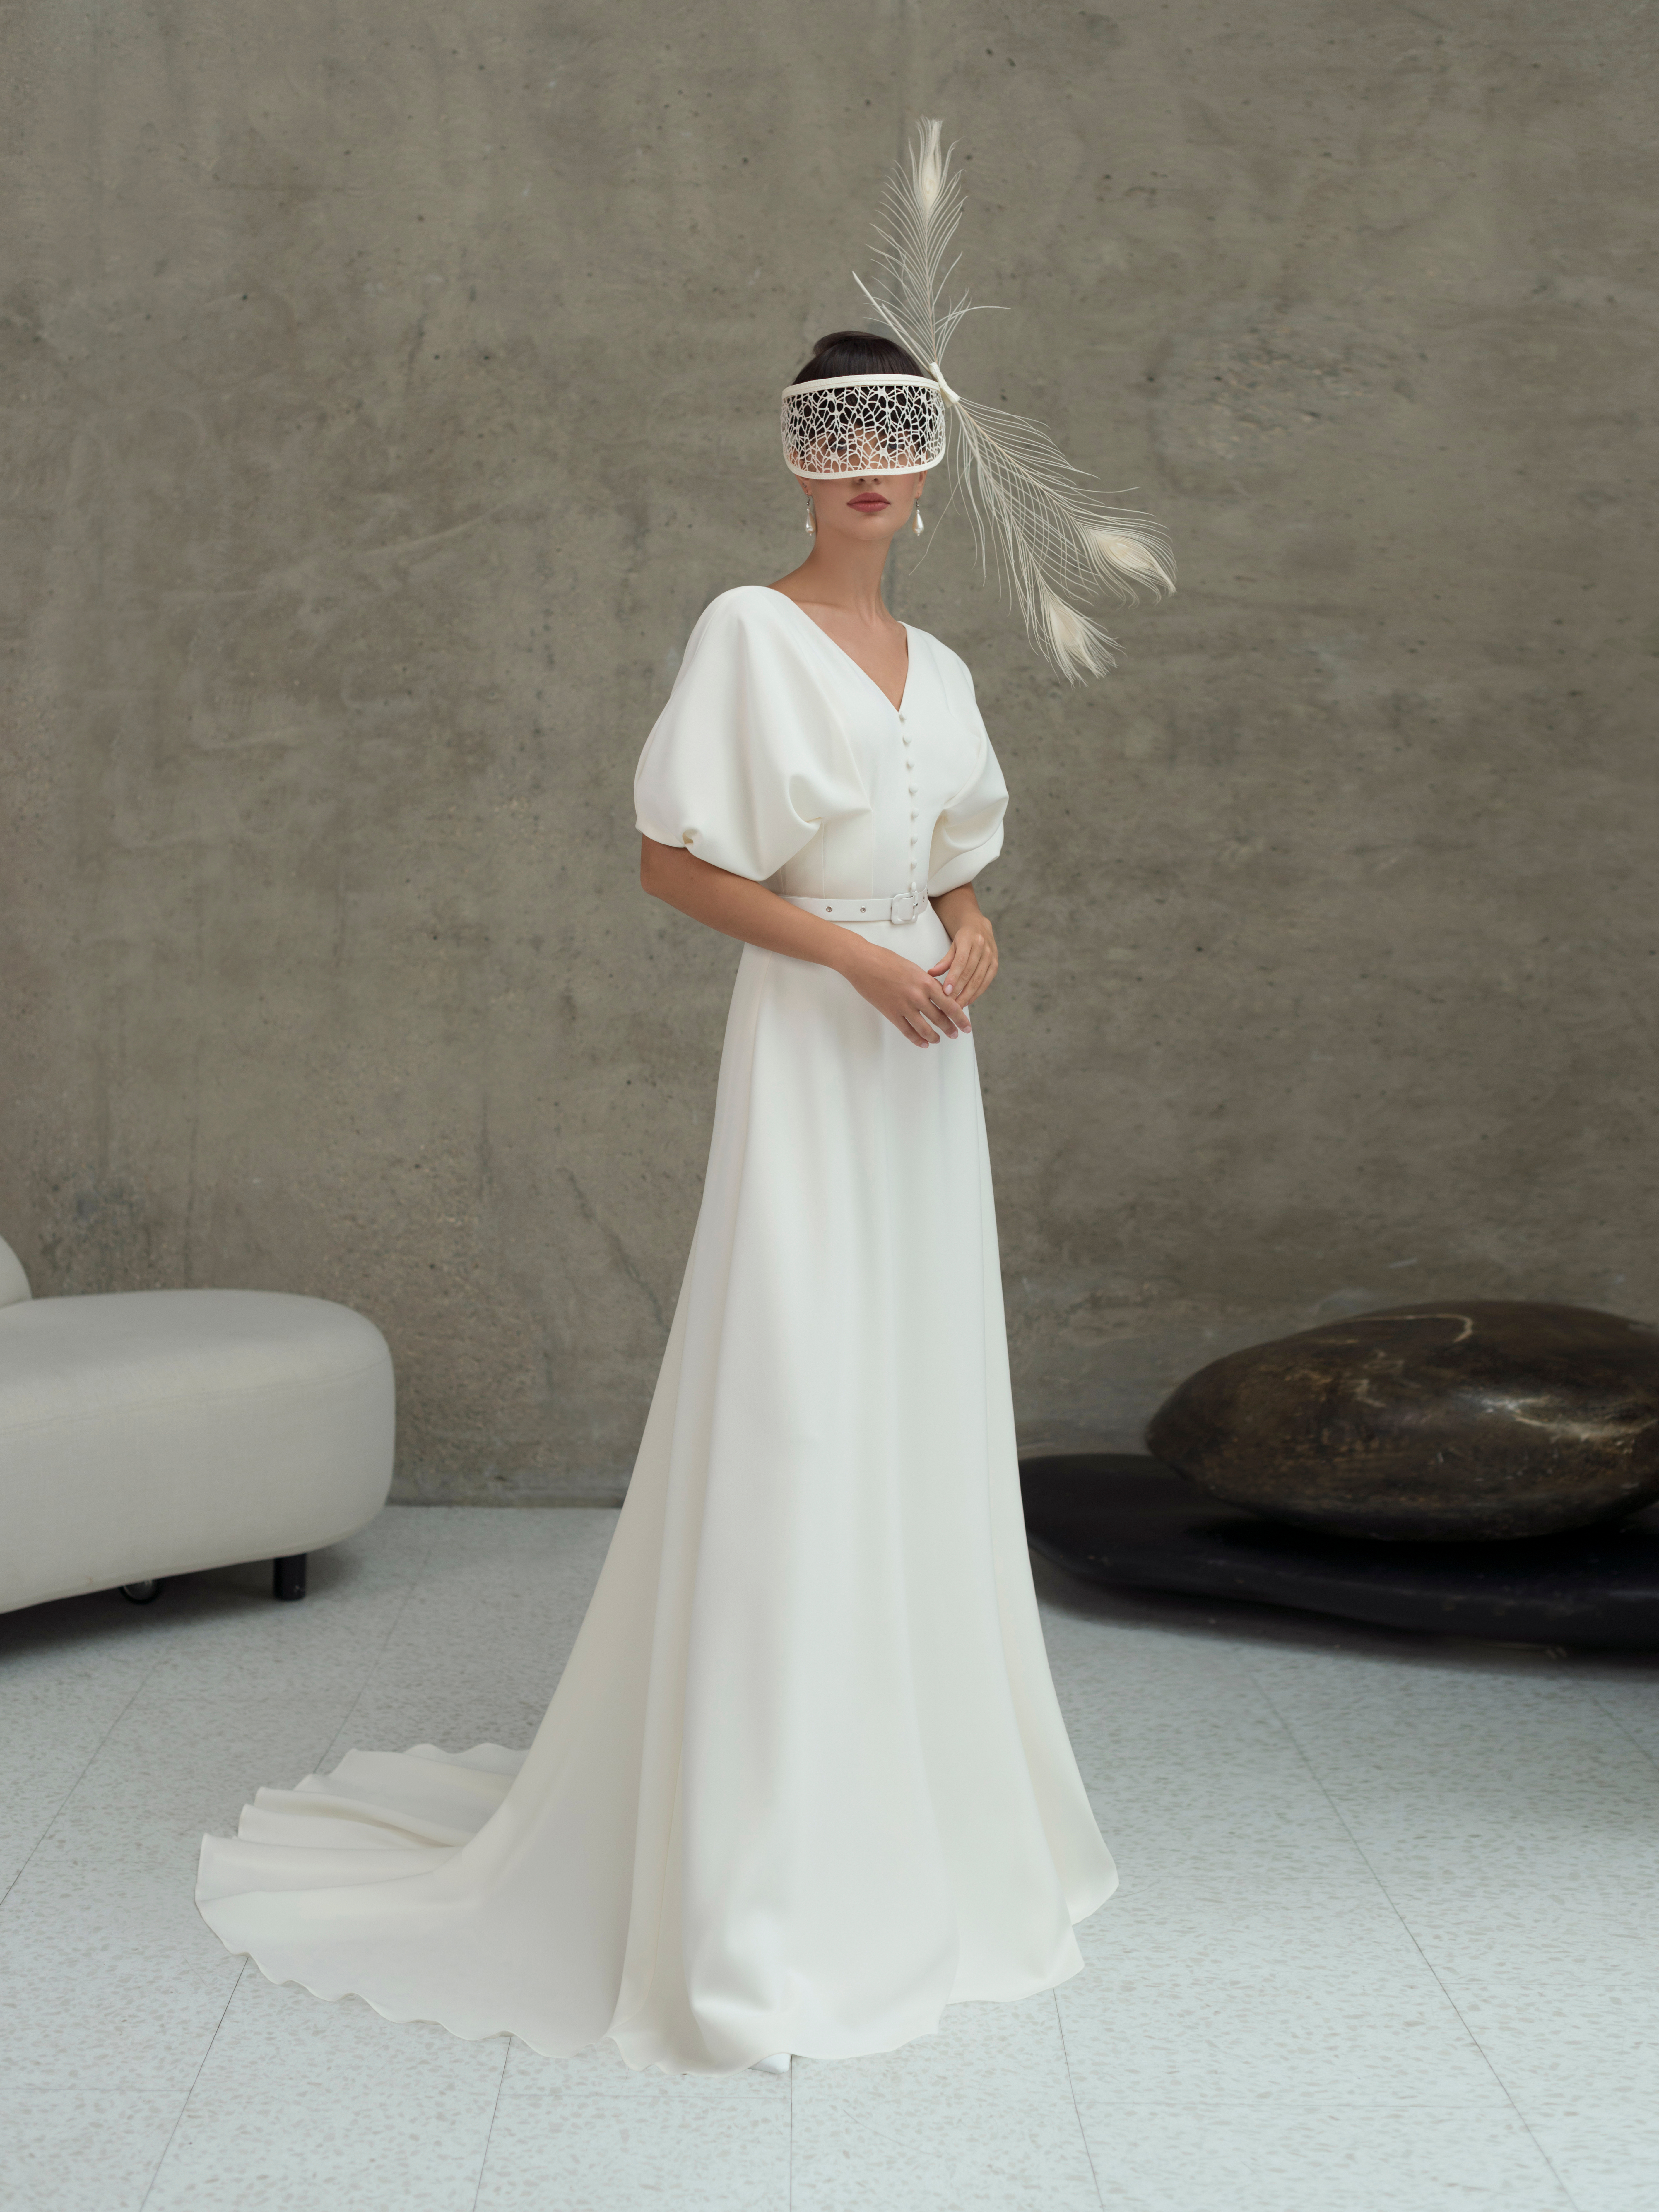 Купить свадебное платье «Комплимент» Мэрри Марк из коллекции 2022 года в Мэри Трюфель